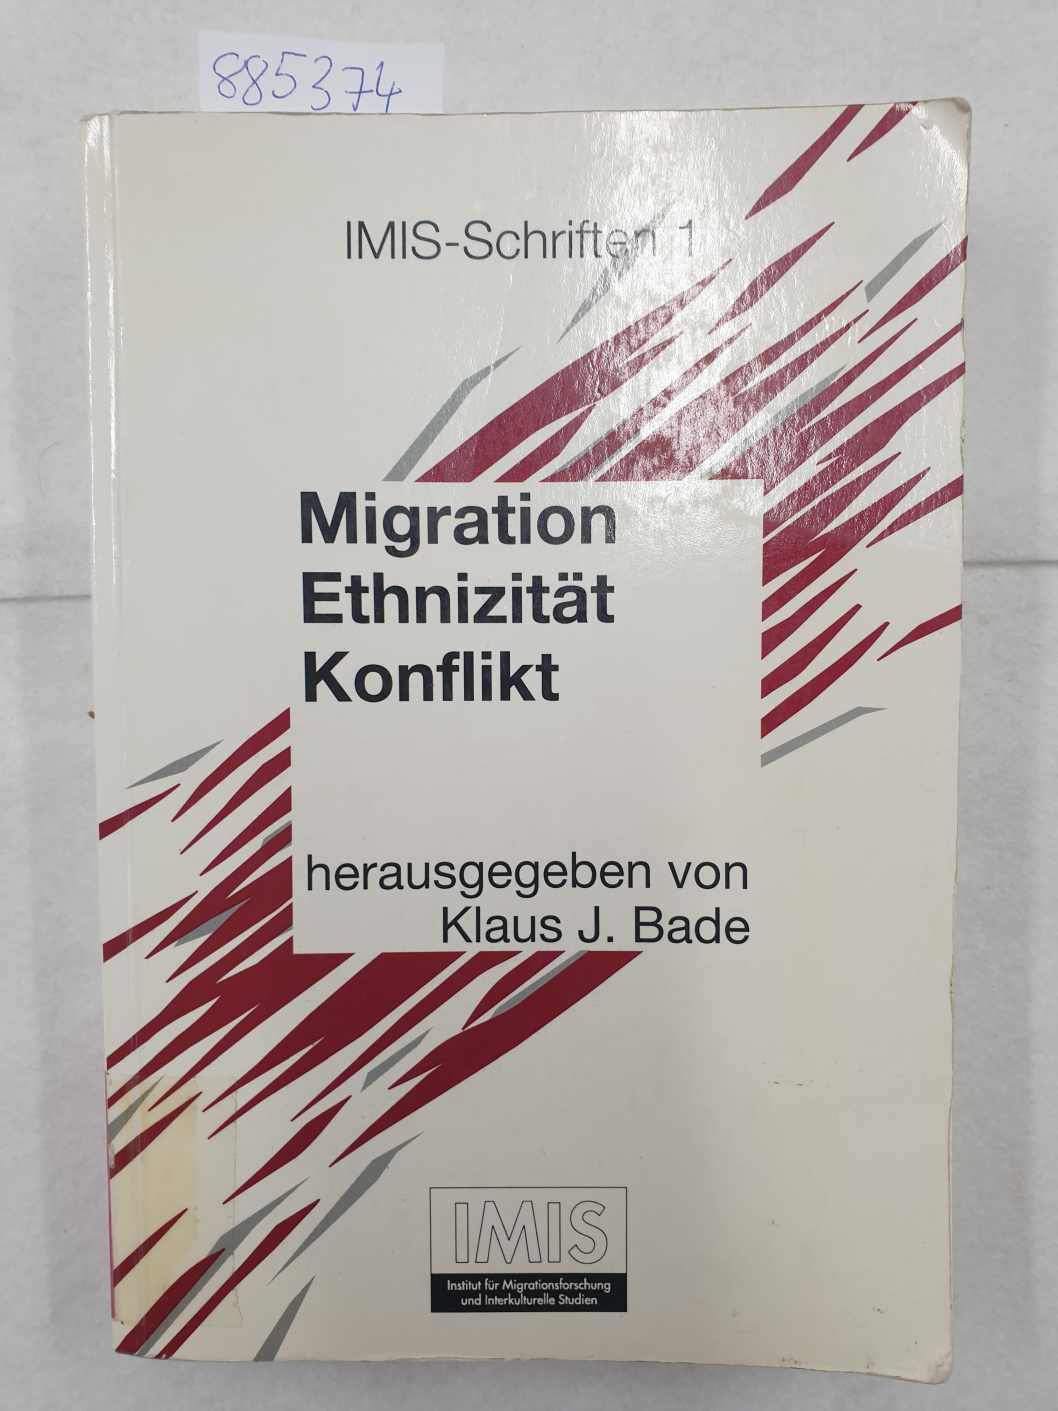 Migration, Ethnizität, Konflikt (IMIS-Schriften 1, Institut für Migrationsforschung und Interkulturelle Studien) - Bade, Klaus J.